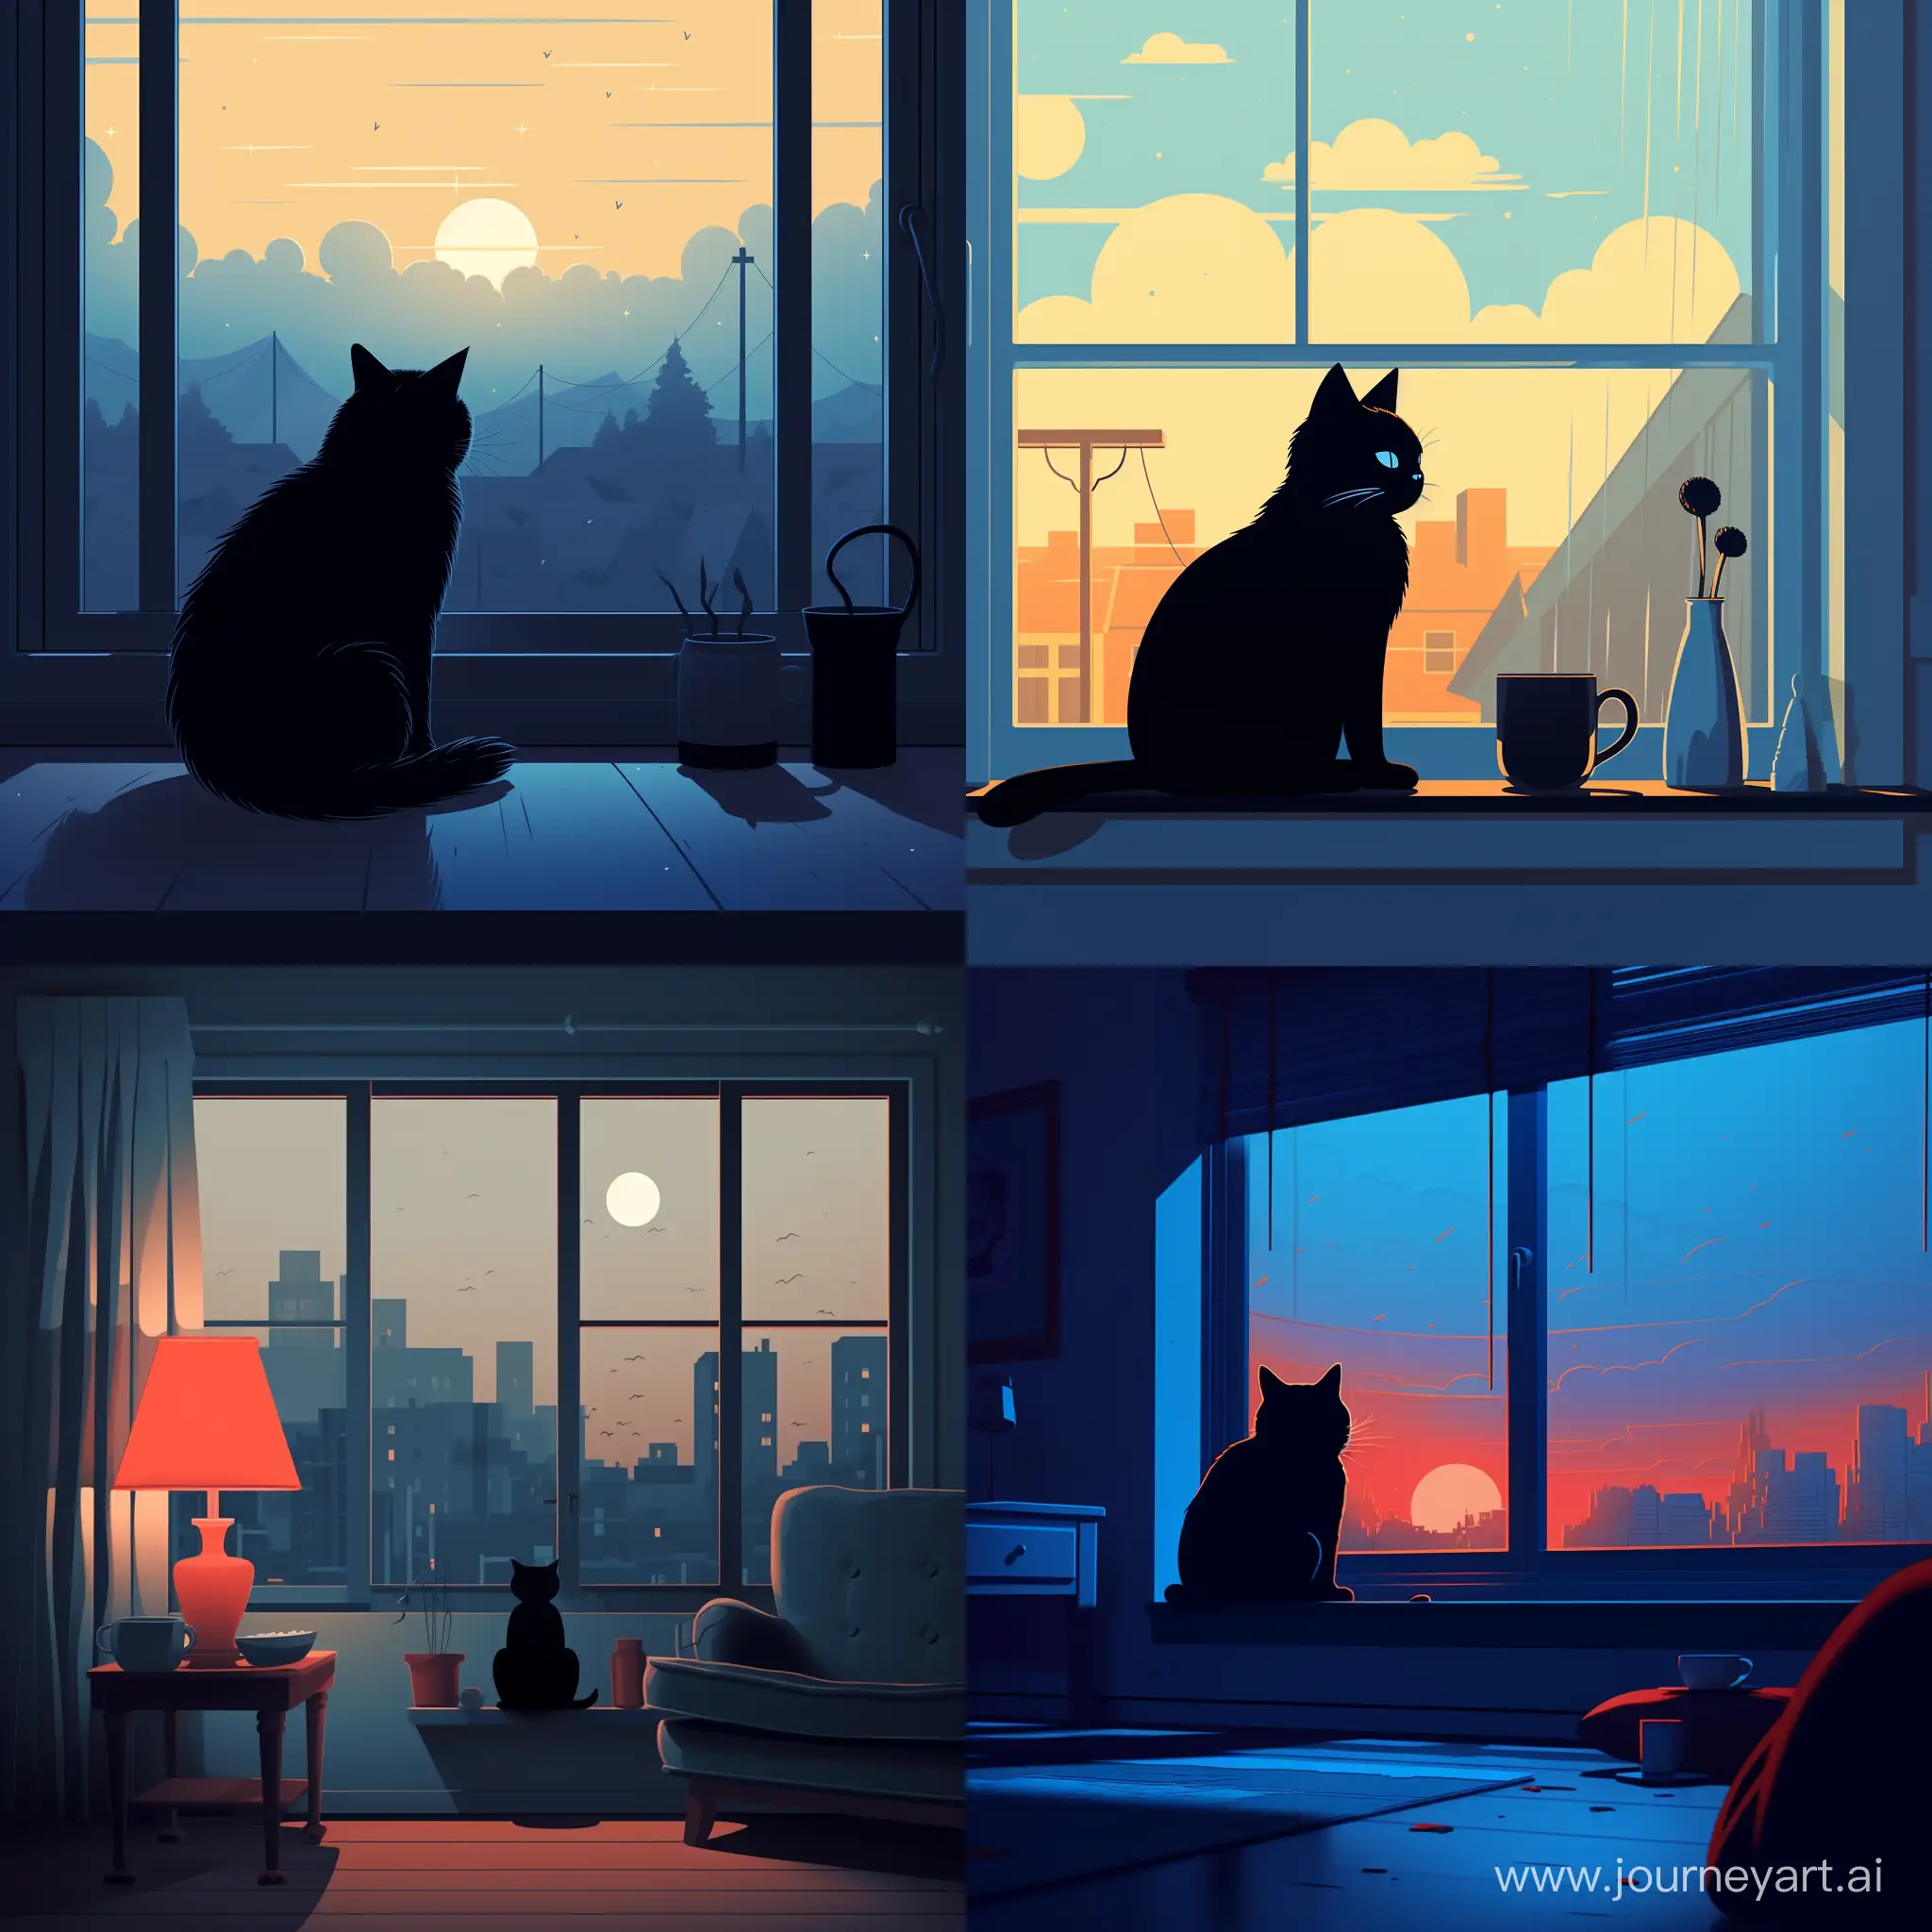  2D cartoon минимализм, ::1.1, голубая кошка с черными узорами лениво разлеглась на фоне окна, мягкий свет проникает через окна отбрасывая блики на кошку